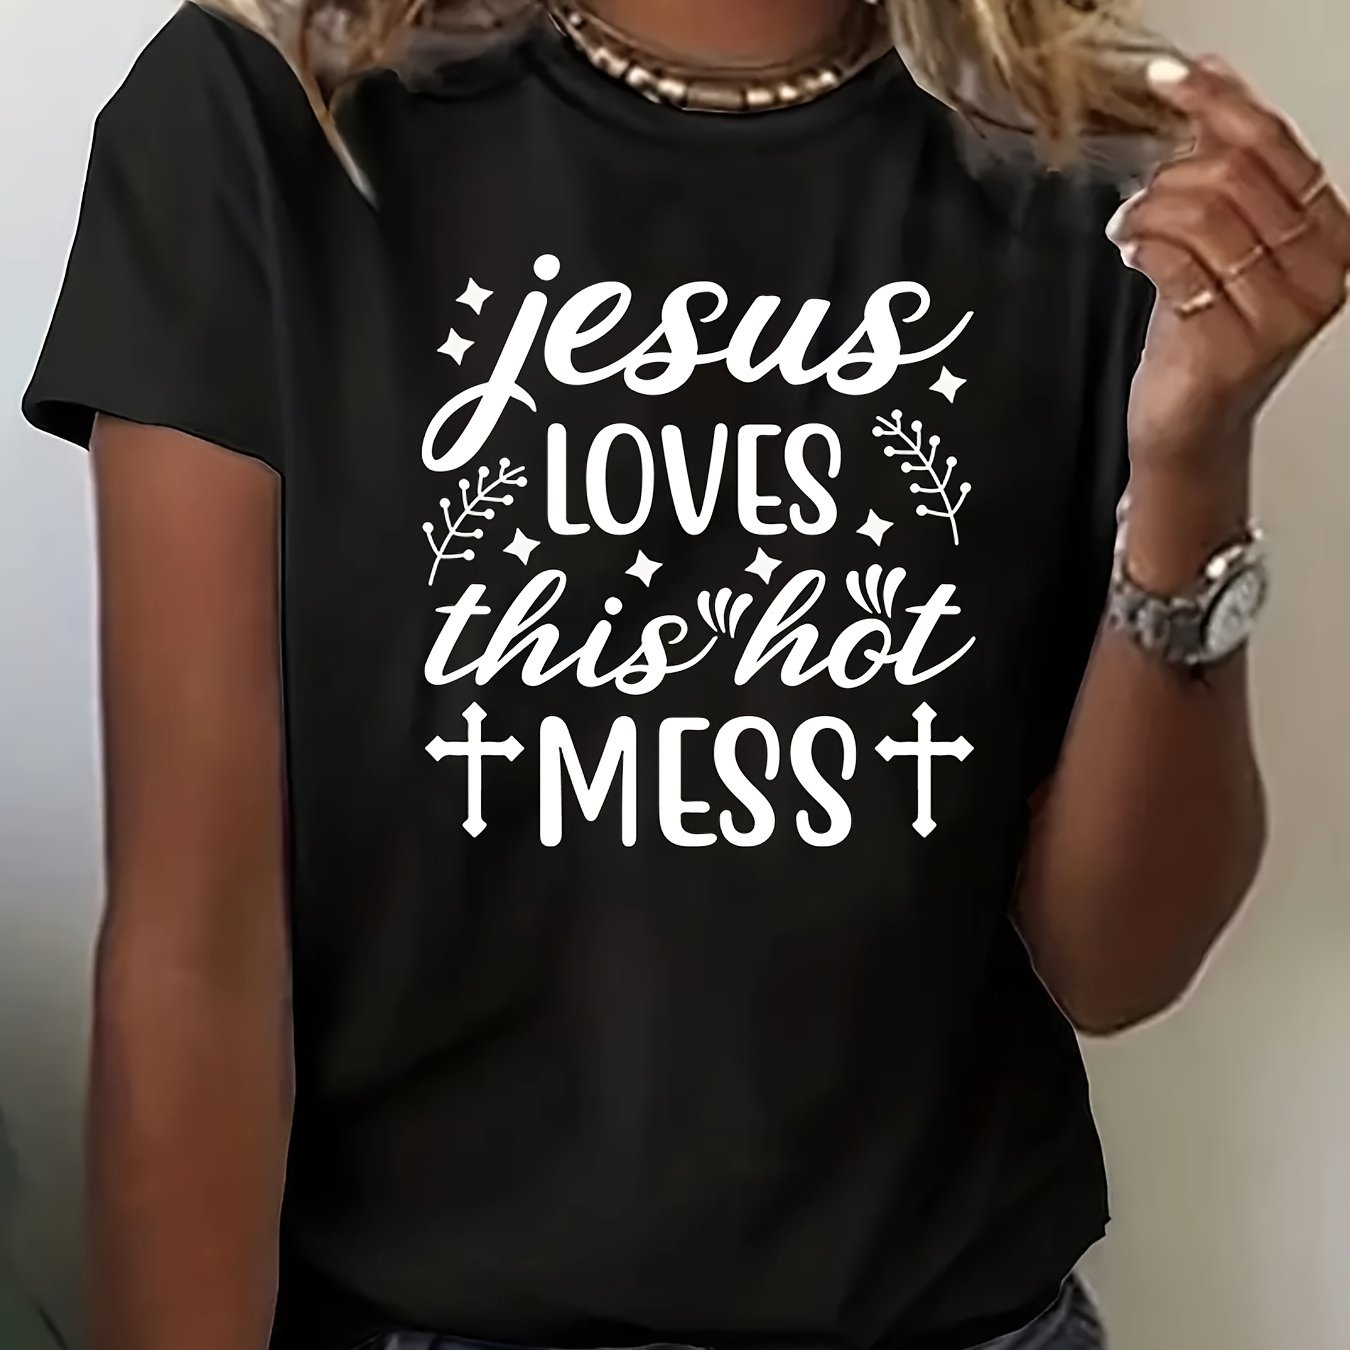 Jesus Loves This Hot Mess Women's Christian T-Shirt claimedbygoddesigns